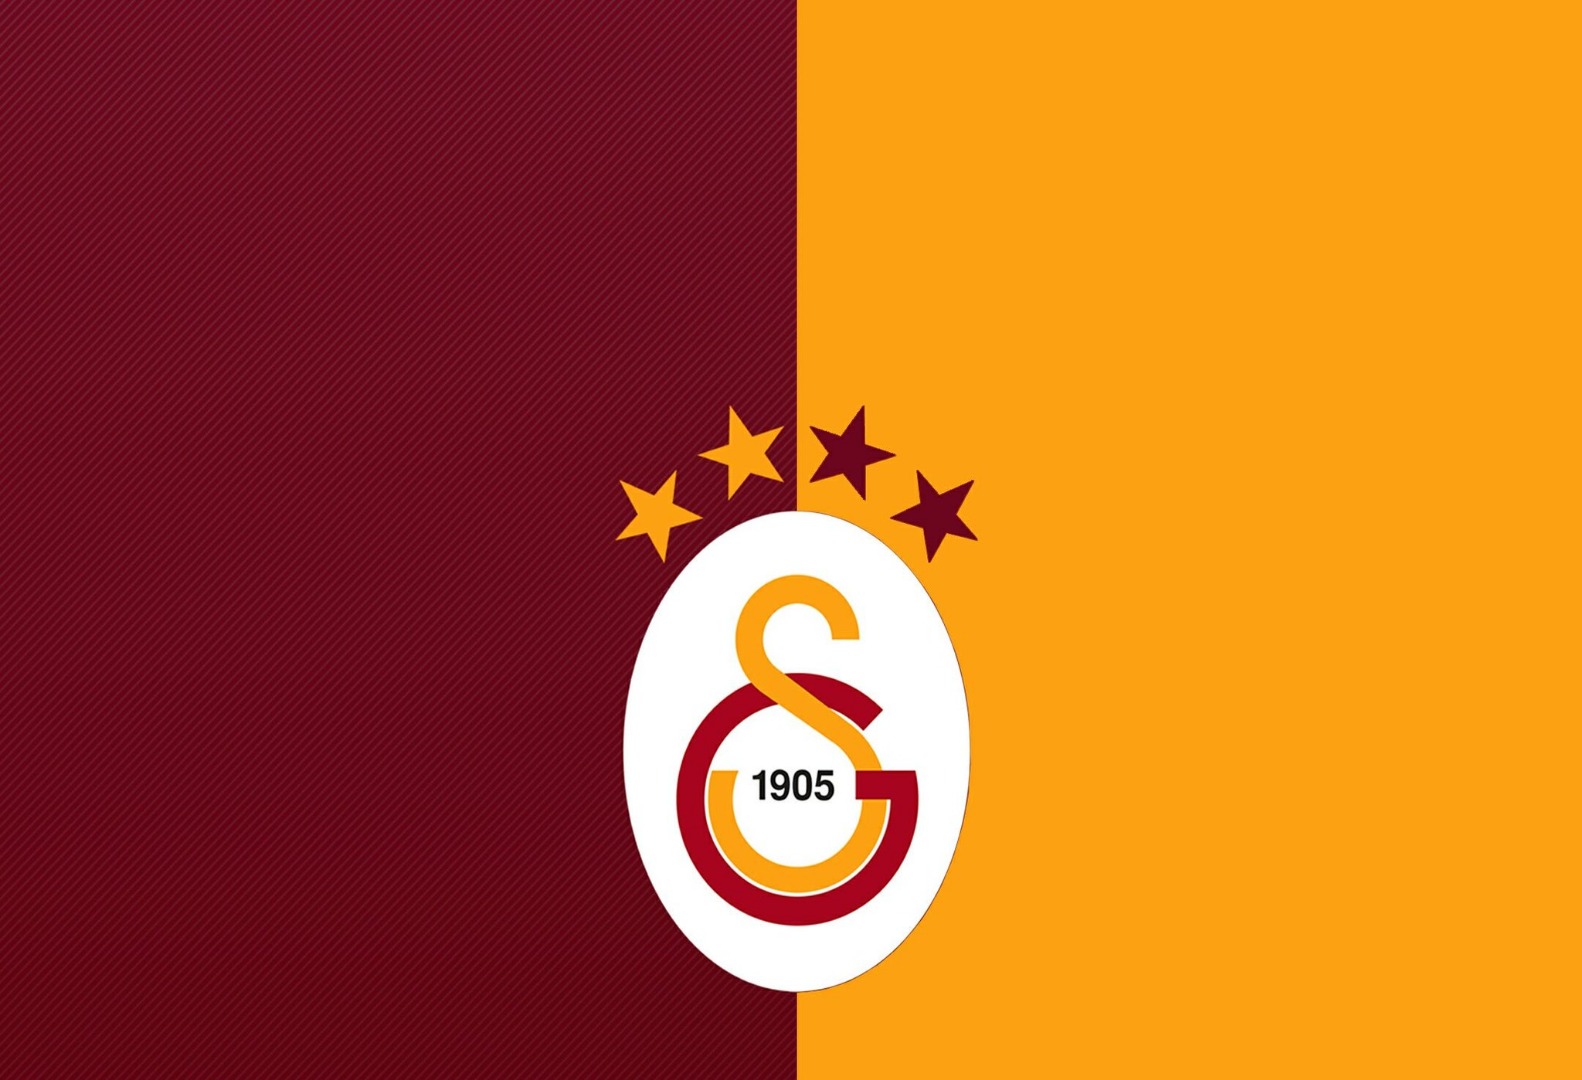 Galatasaray'dan seçim tarihi için yeni açıklama